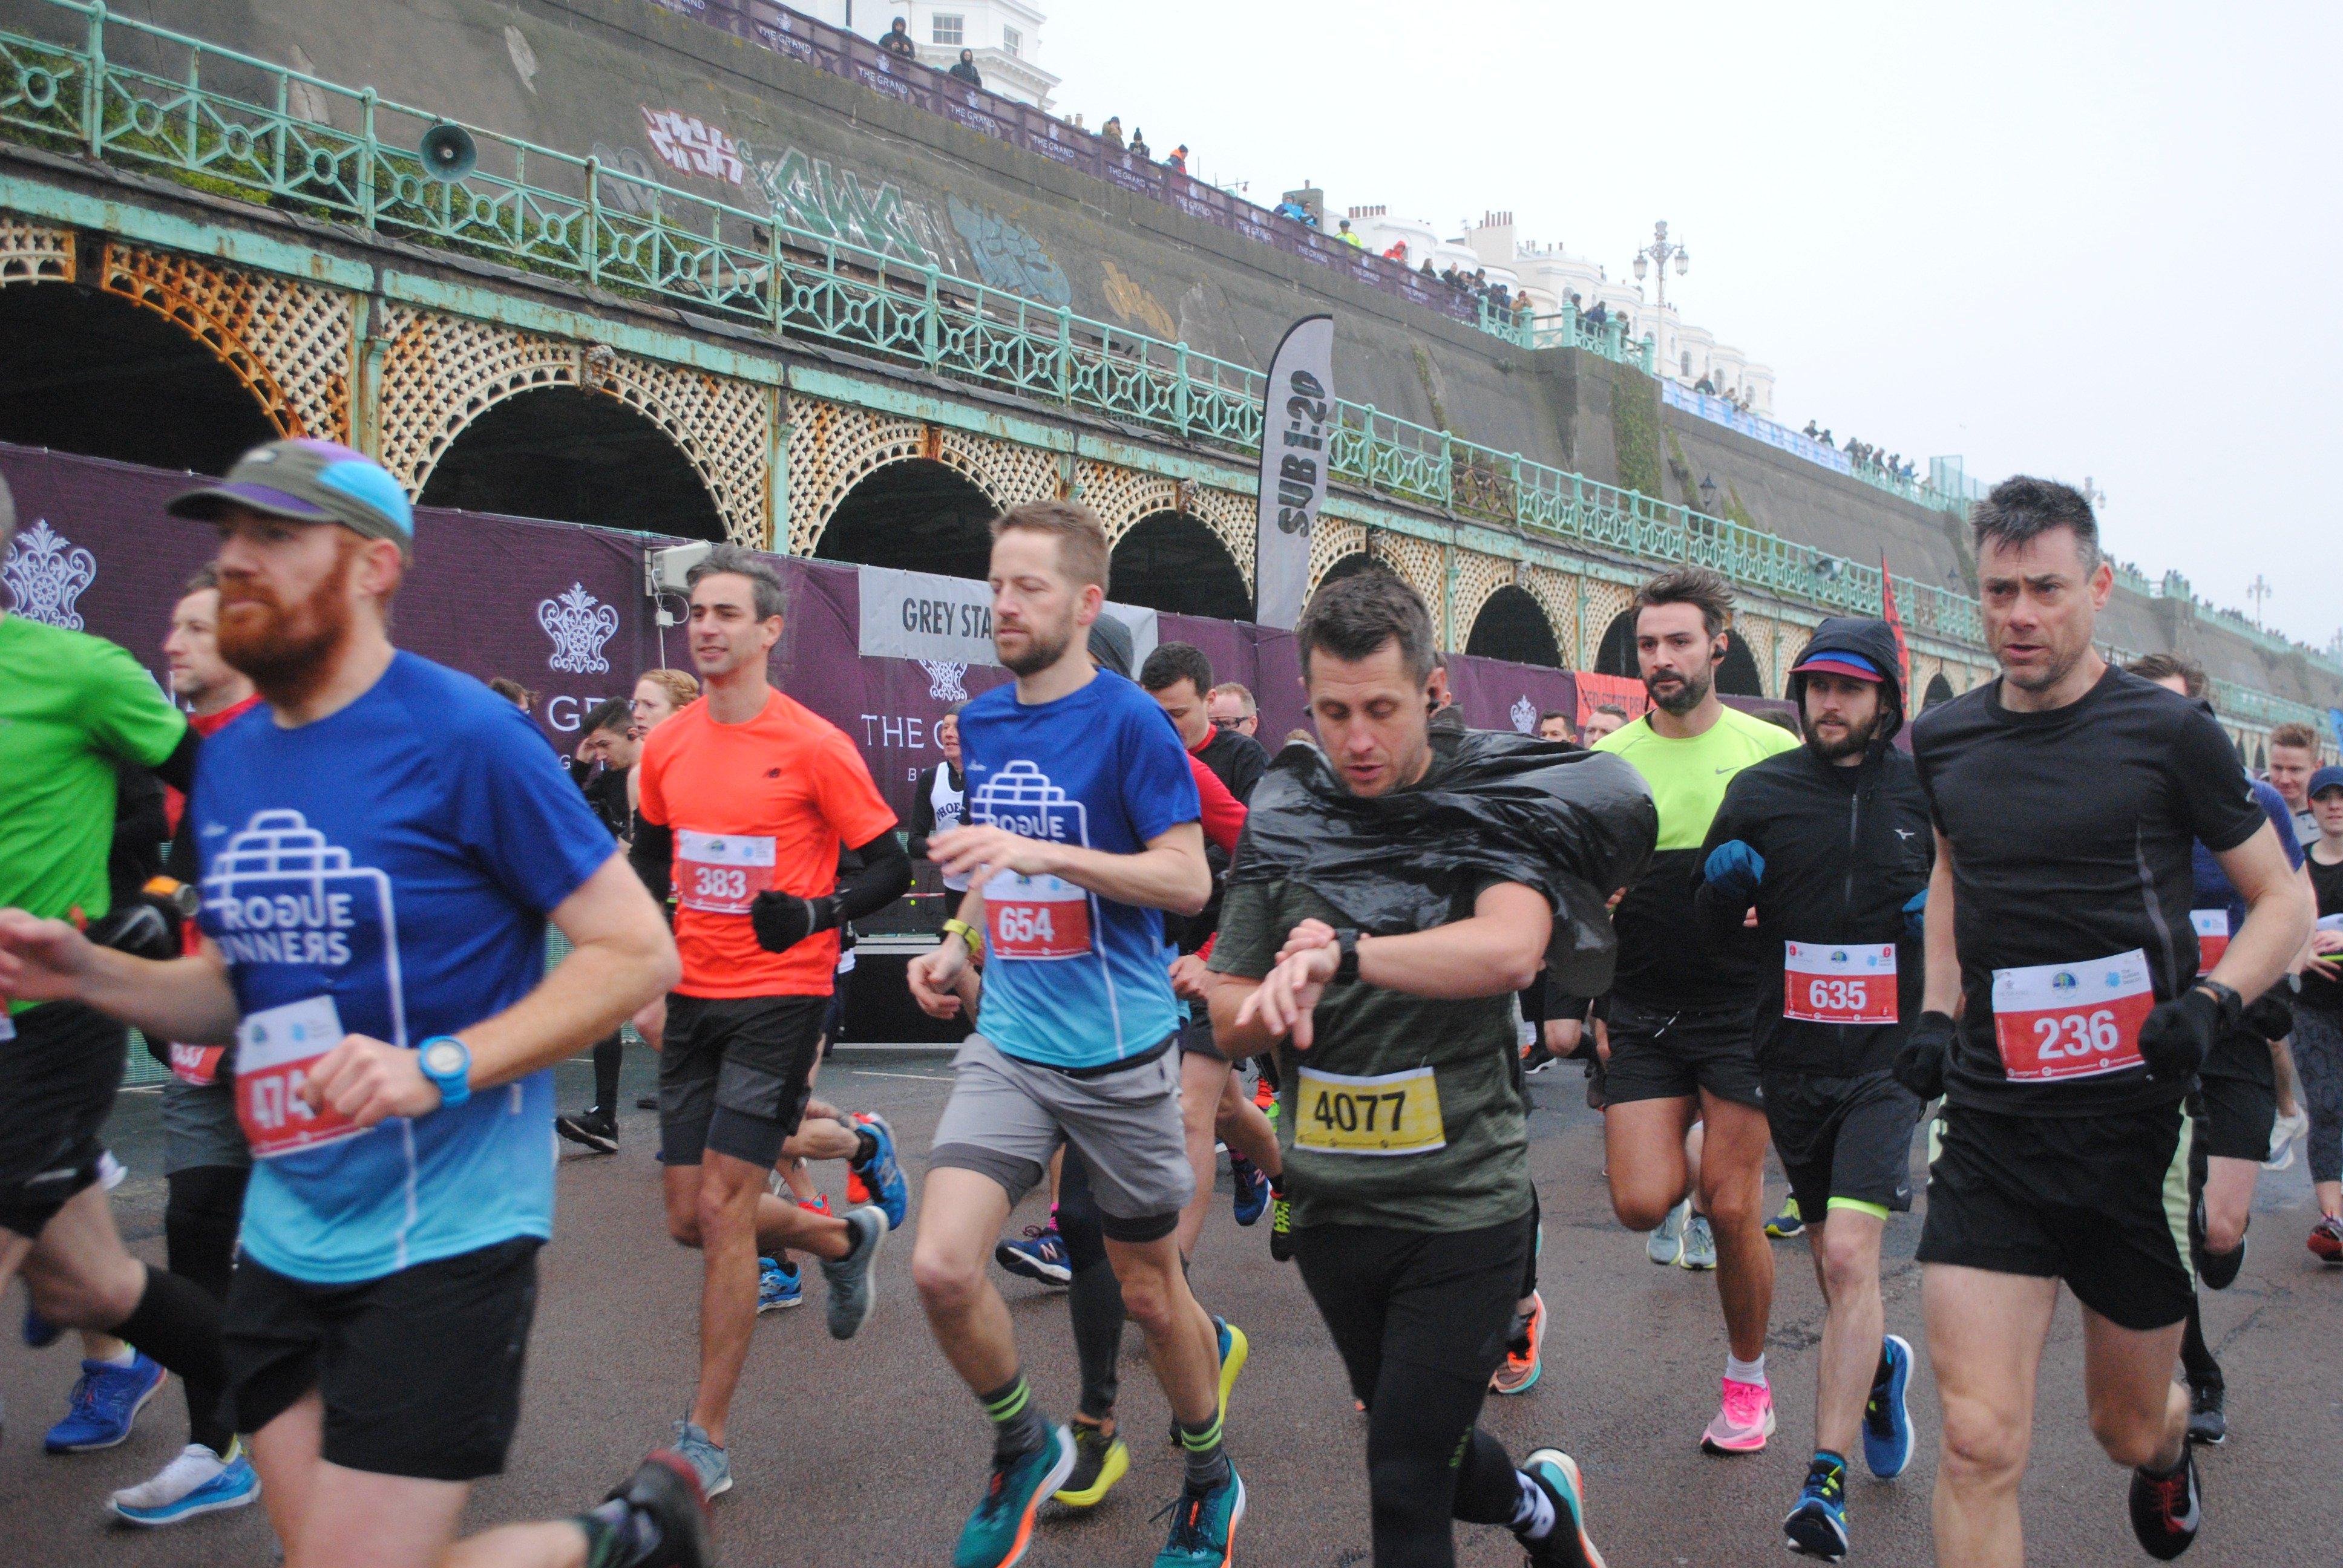 The 30th half marathon gets underway